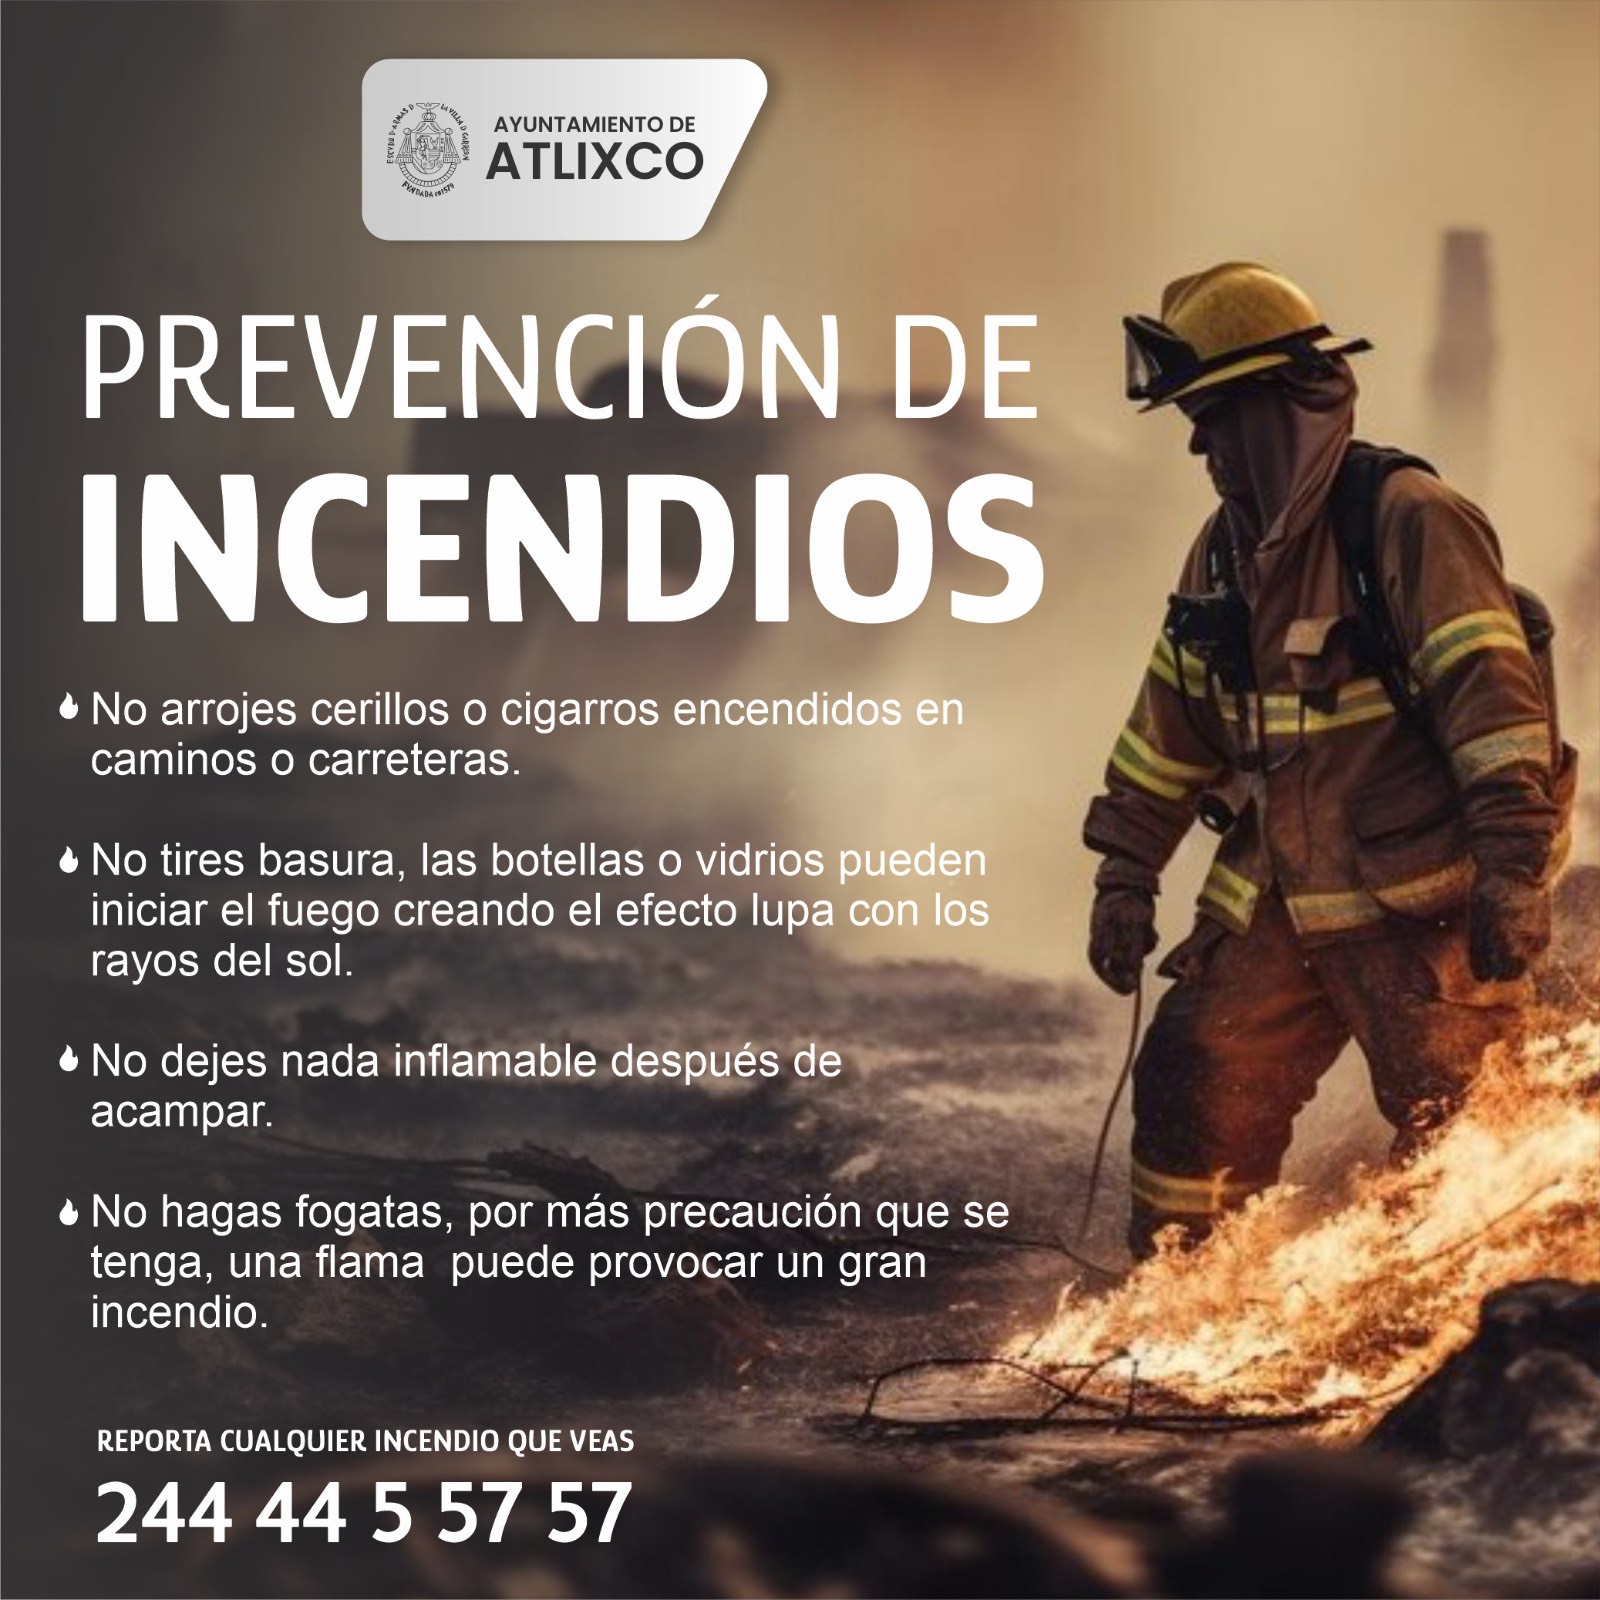 ¡Cuídemos Atlixco! evitemos incendios forestales siguiendo estas recomendaciones